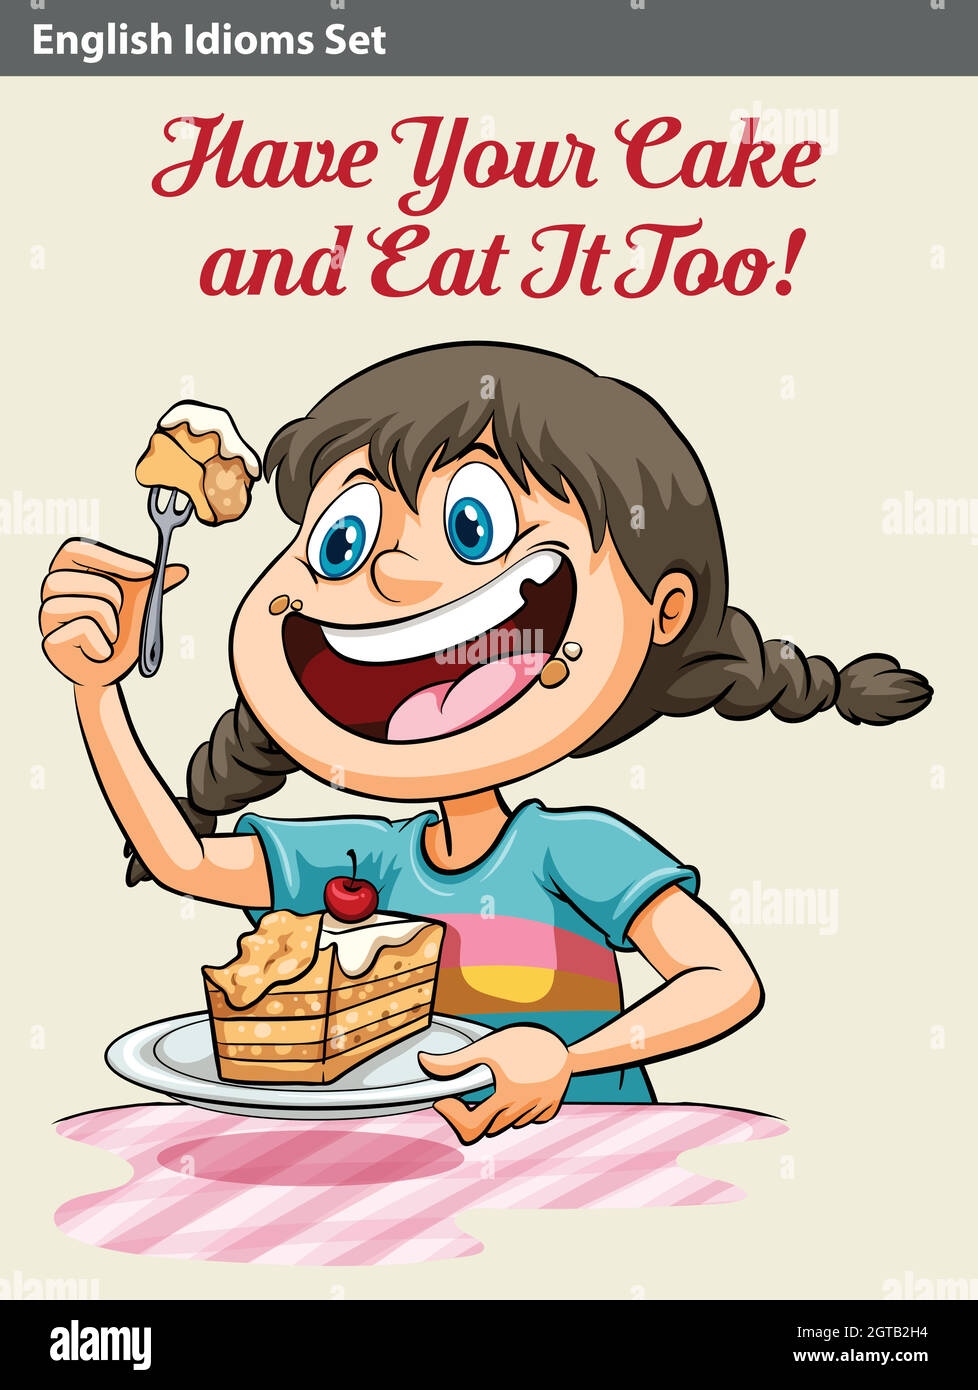 Una ragazza di mangiare una torta Illustrazione Vettoriale